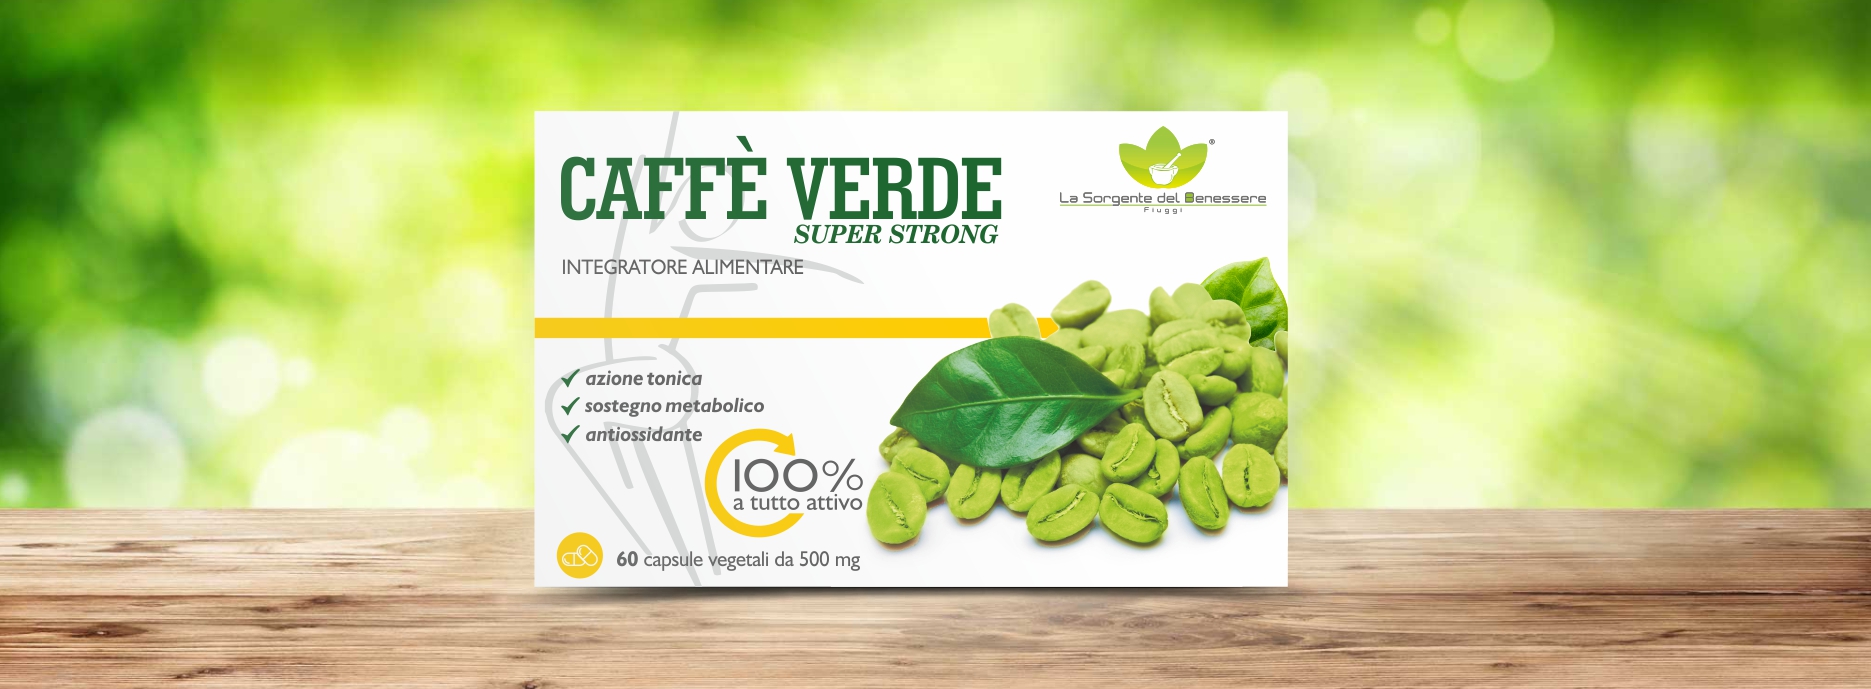 Caffè Verde Super Strong - La Sorgente del Benessere